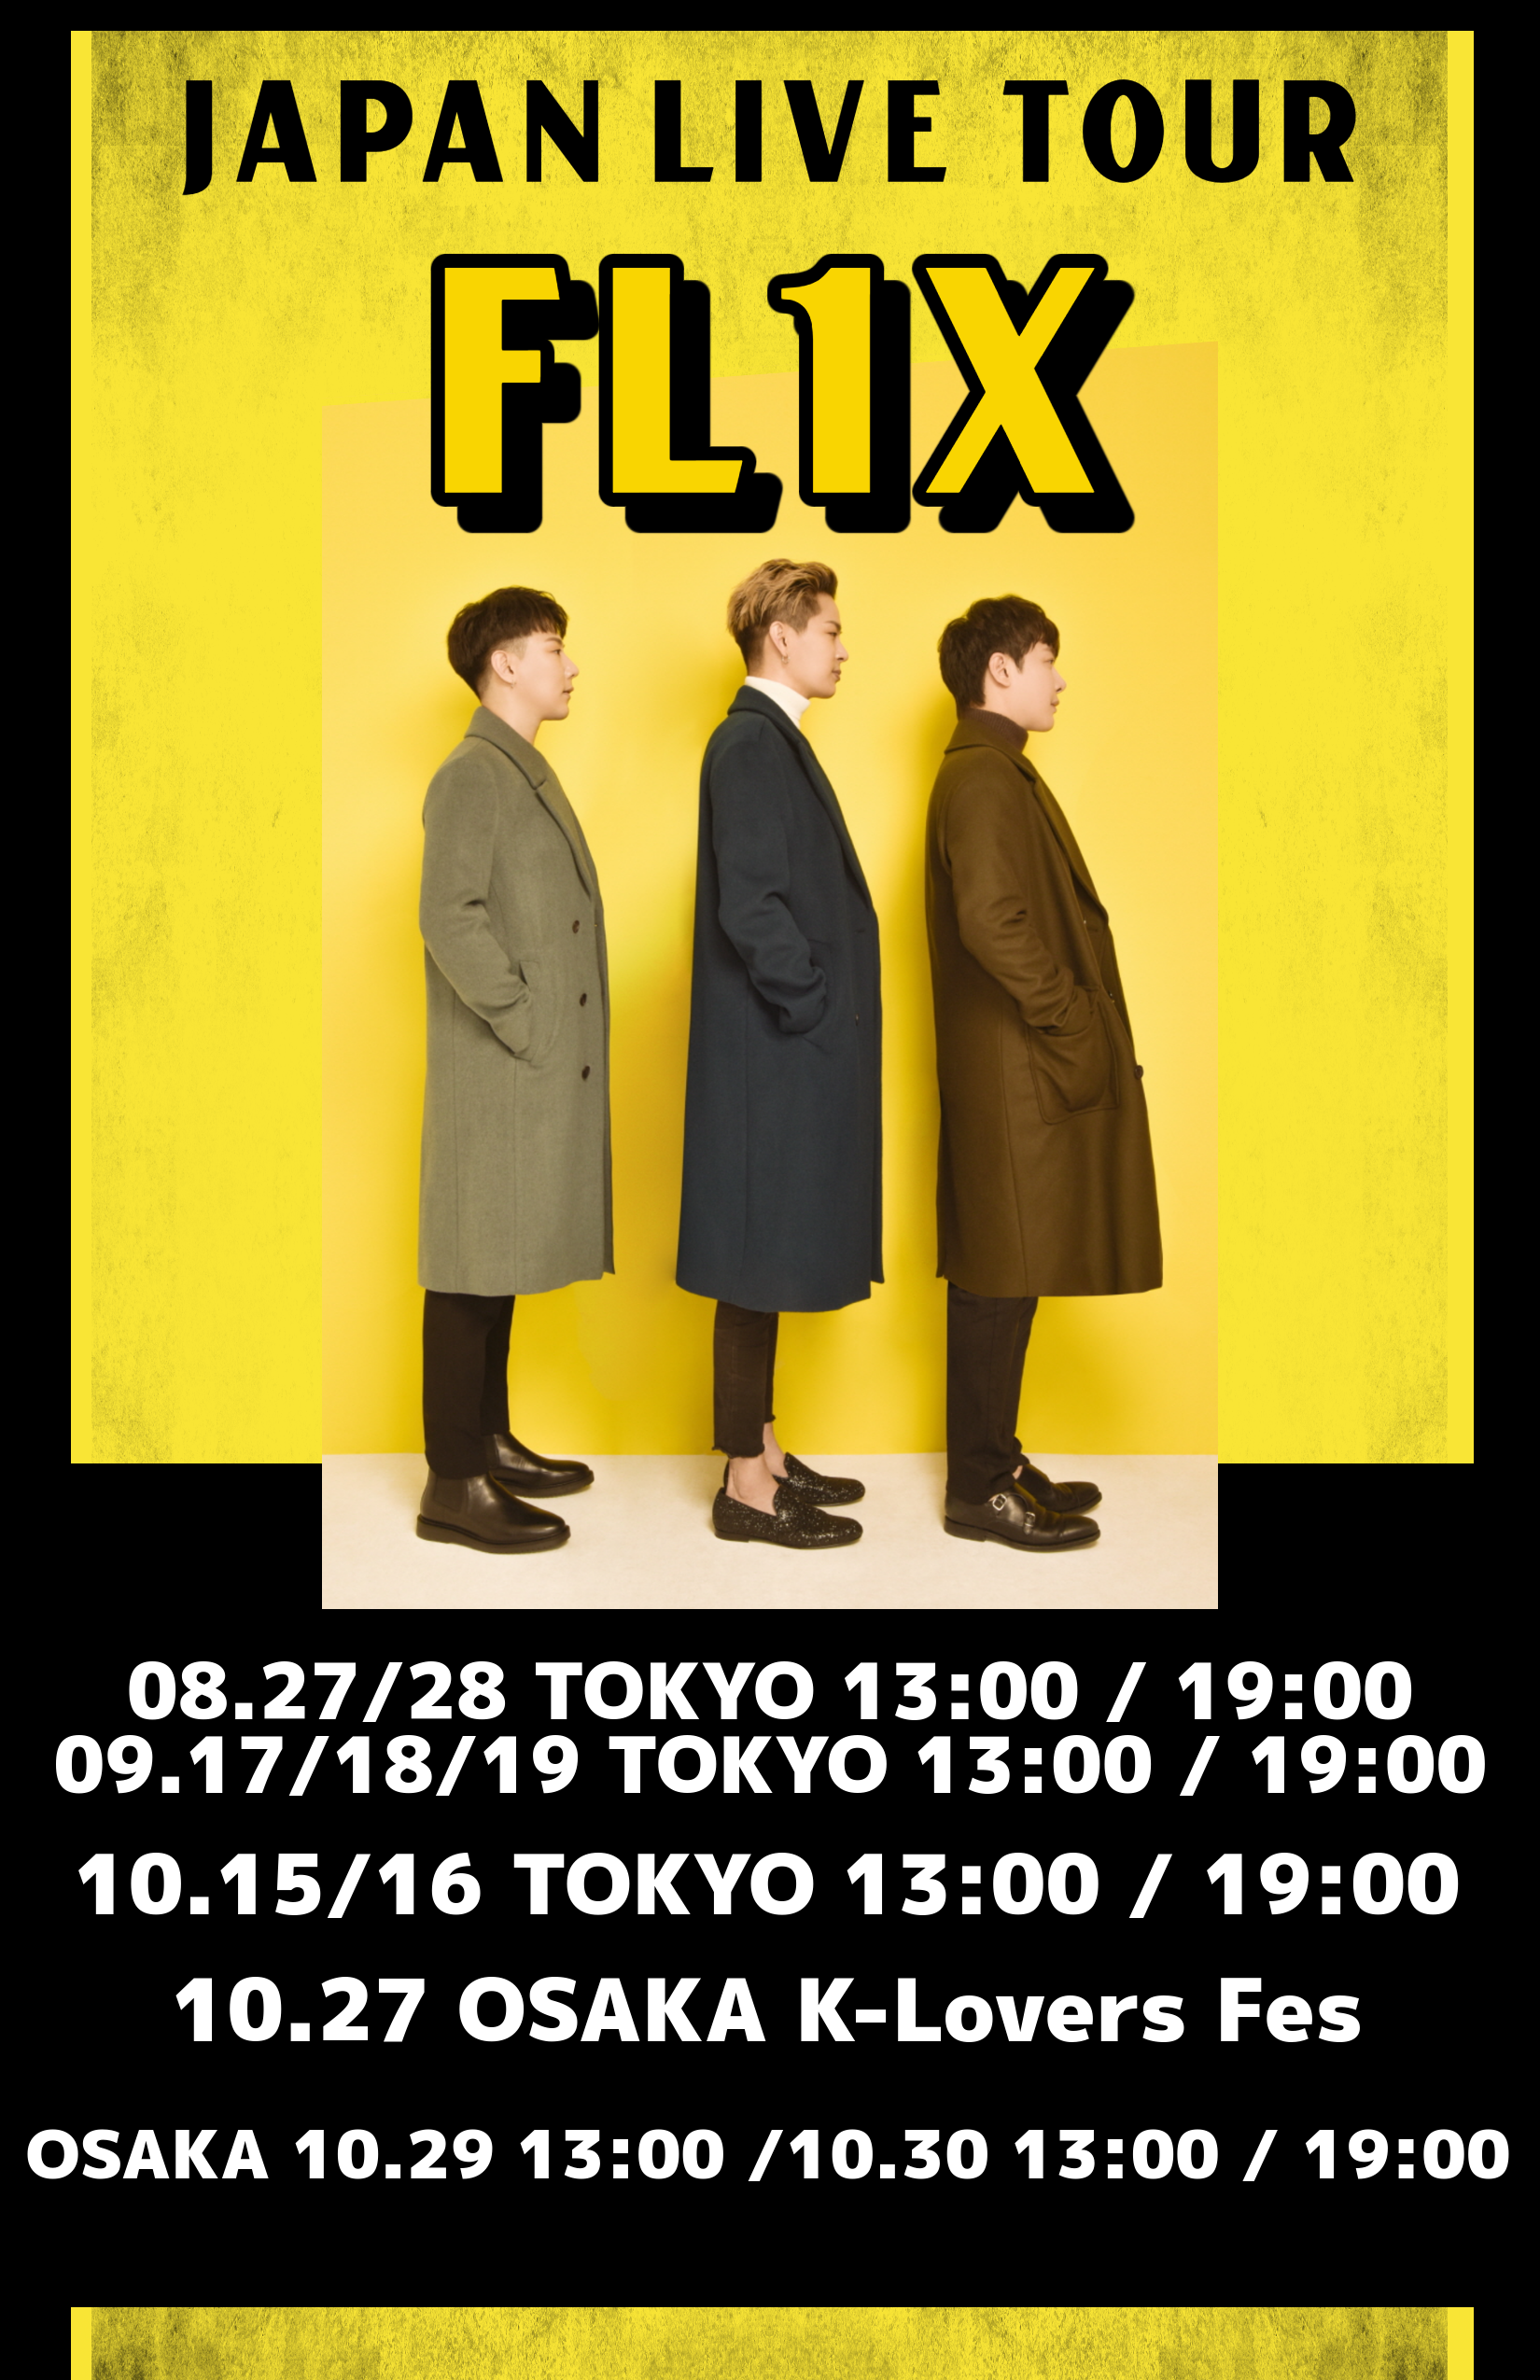 ※追加公演 FL1X  JAPAN LIVE TOUR - ハロウィンイベント